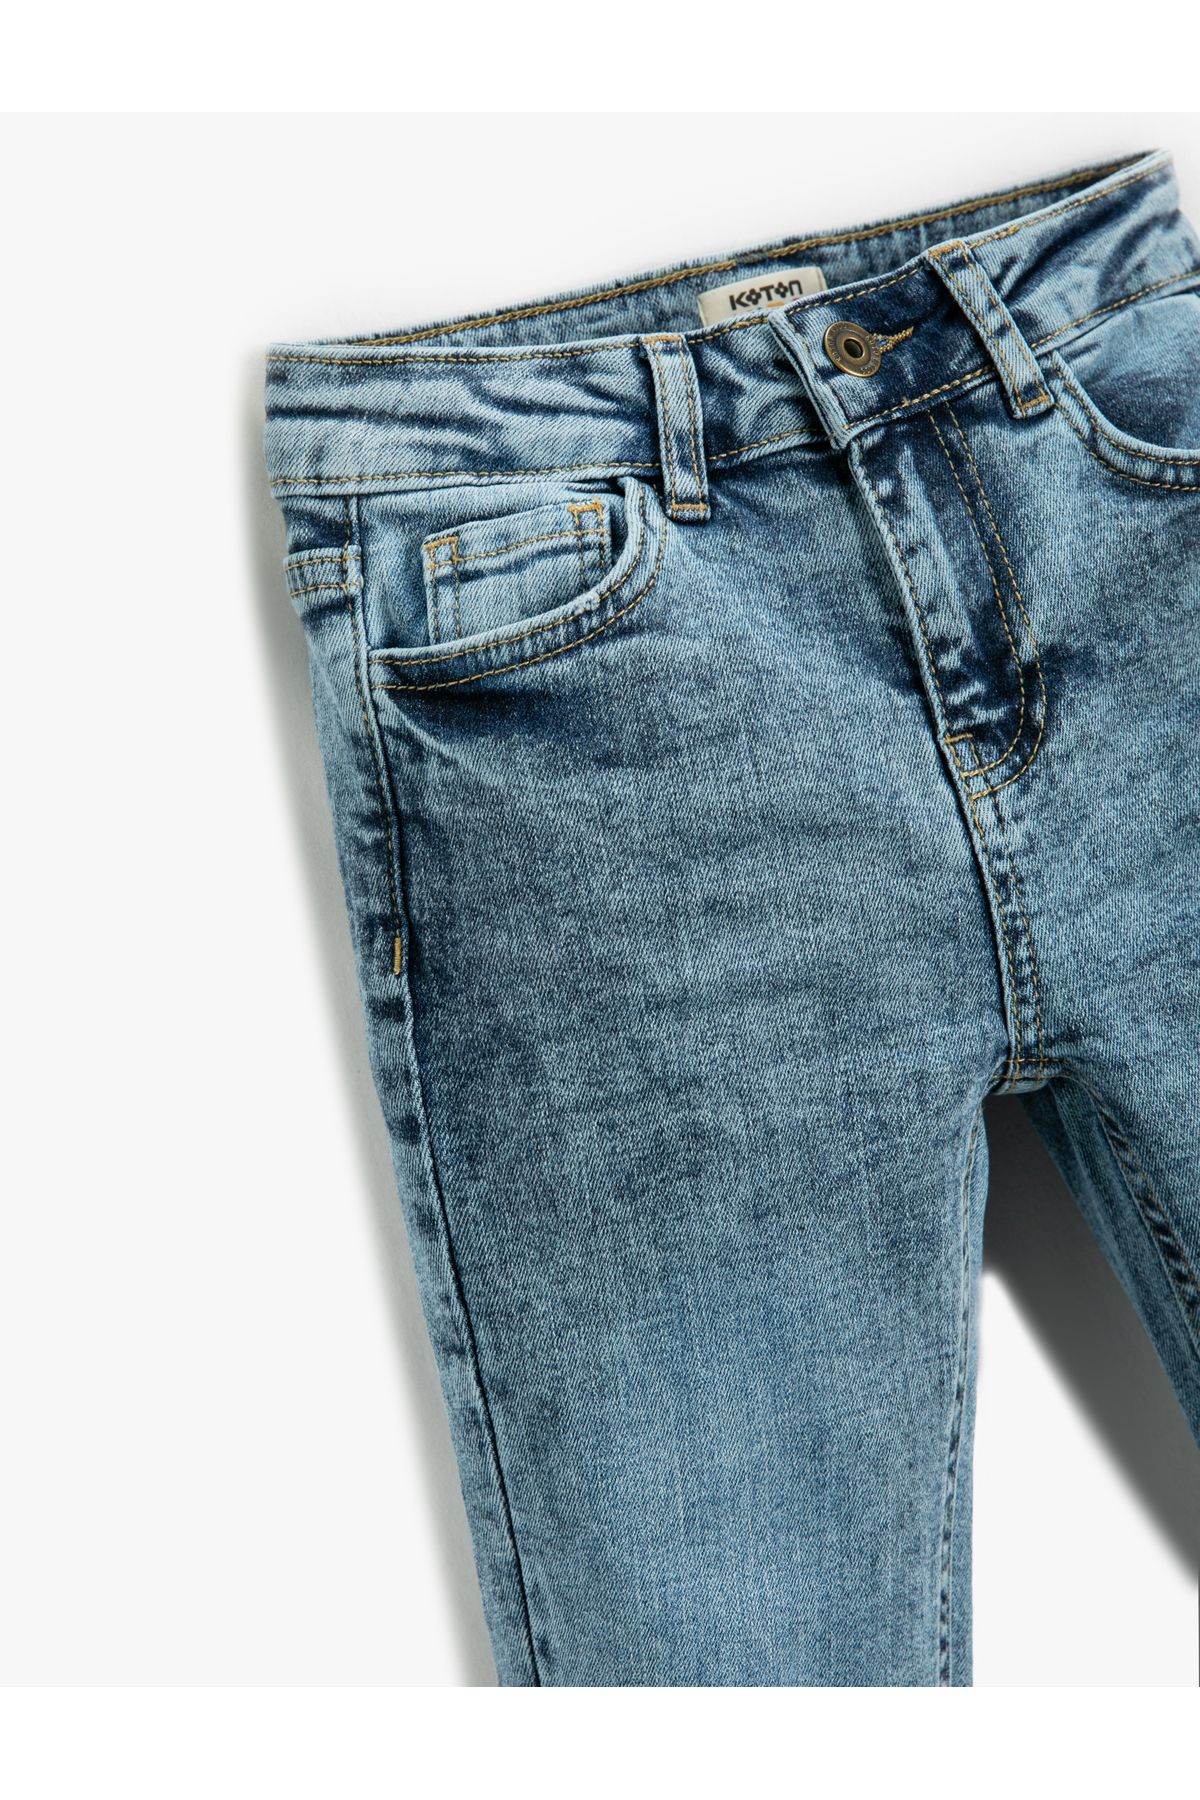 Koton شلوار جین با جیب نخی - باریک کمر الاستیک قابل تنظیم